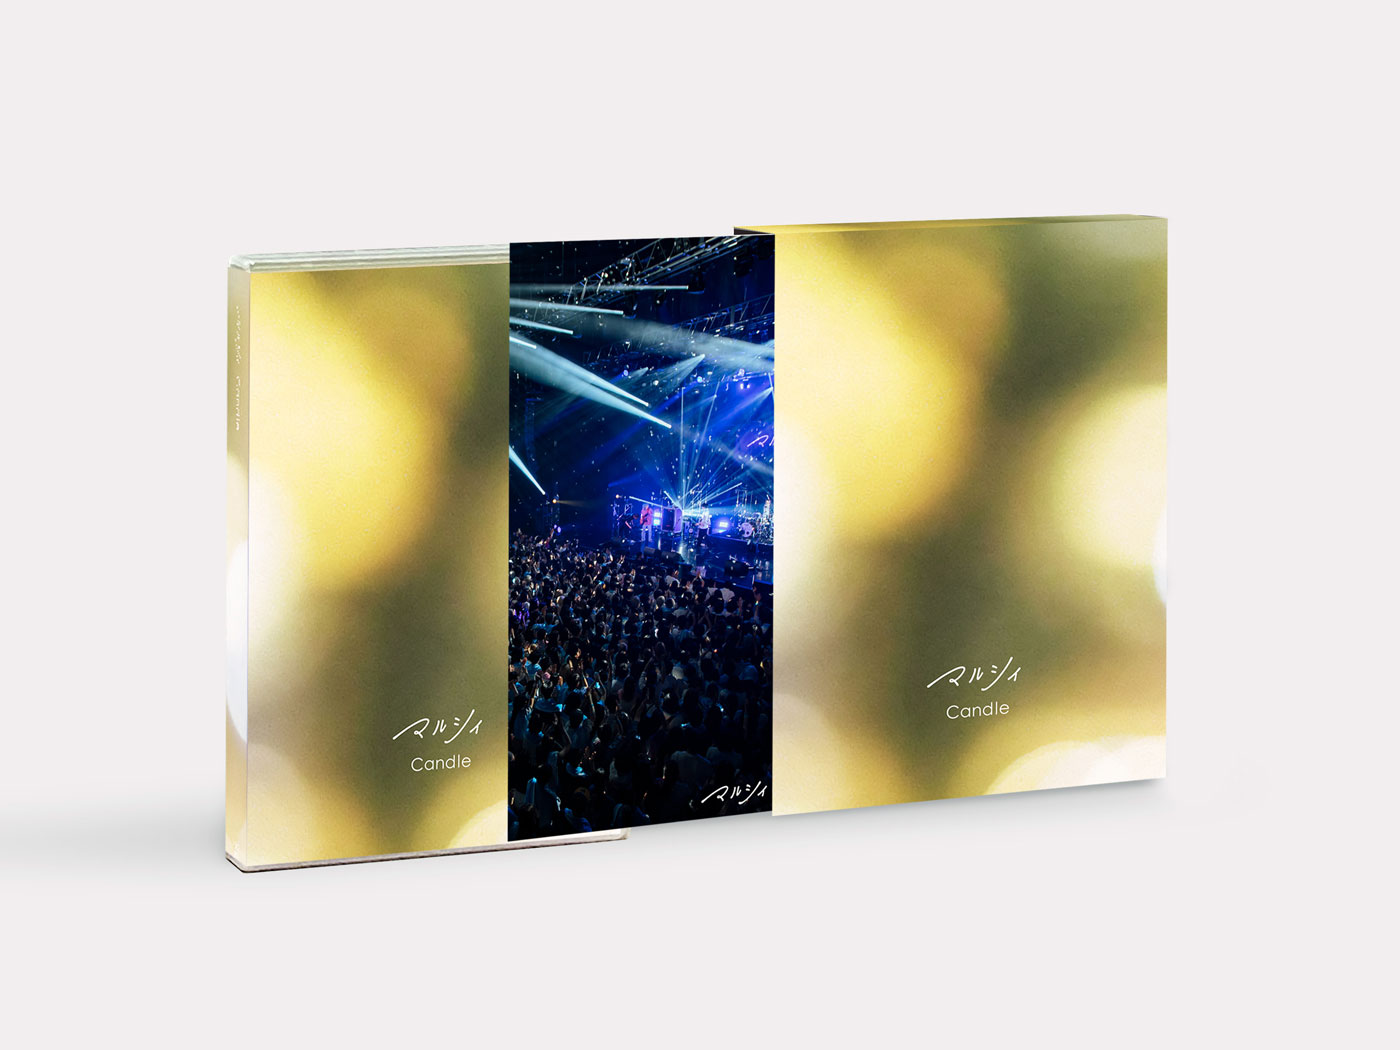 【限定価格】マルシィ Candle CD+LIVE Blu-ray+フォトブック未来図